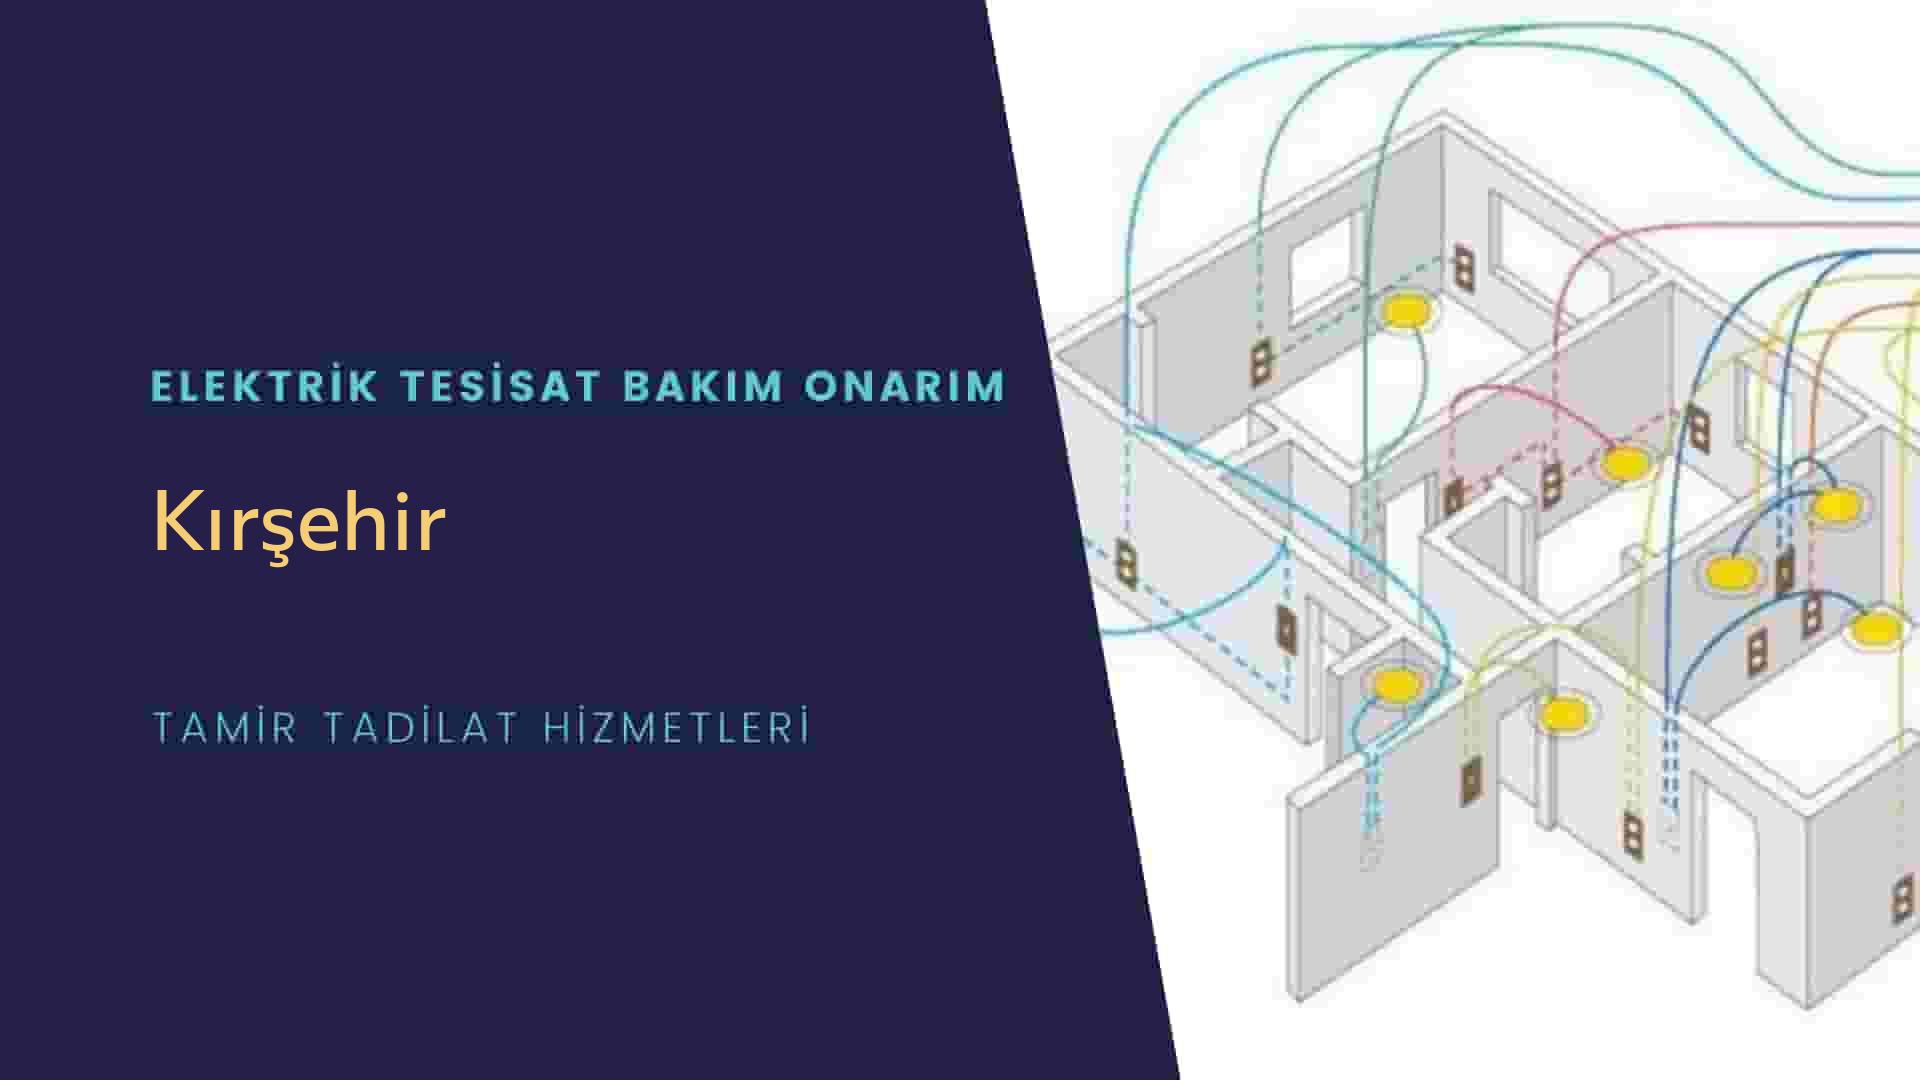 Kırşehir'de elektrik tesisatı ustalarımı arıyorsunuz doğru adrestenizi Kırşehir elektrik tesisatı ustalarımız 7/24 sizlere hizmet vermekten mutluluk duyar.